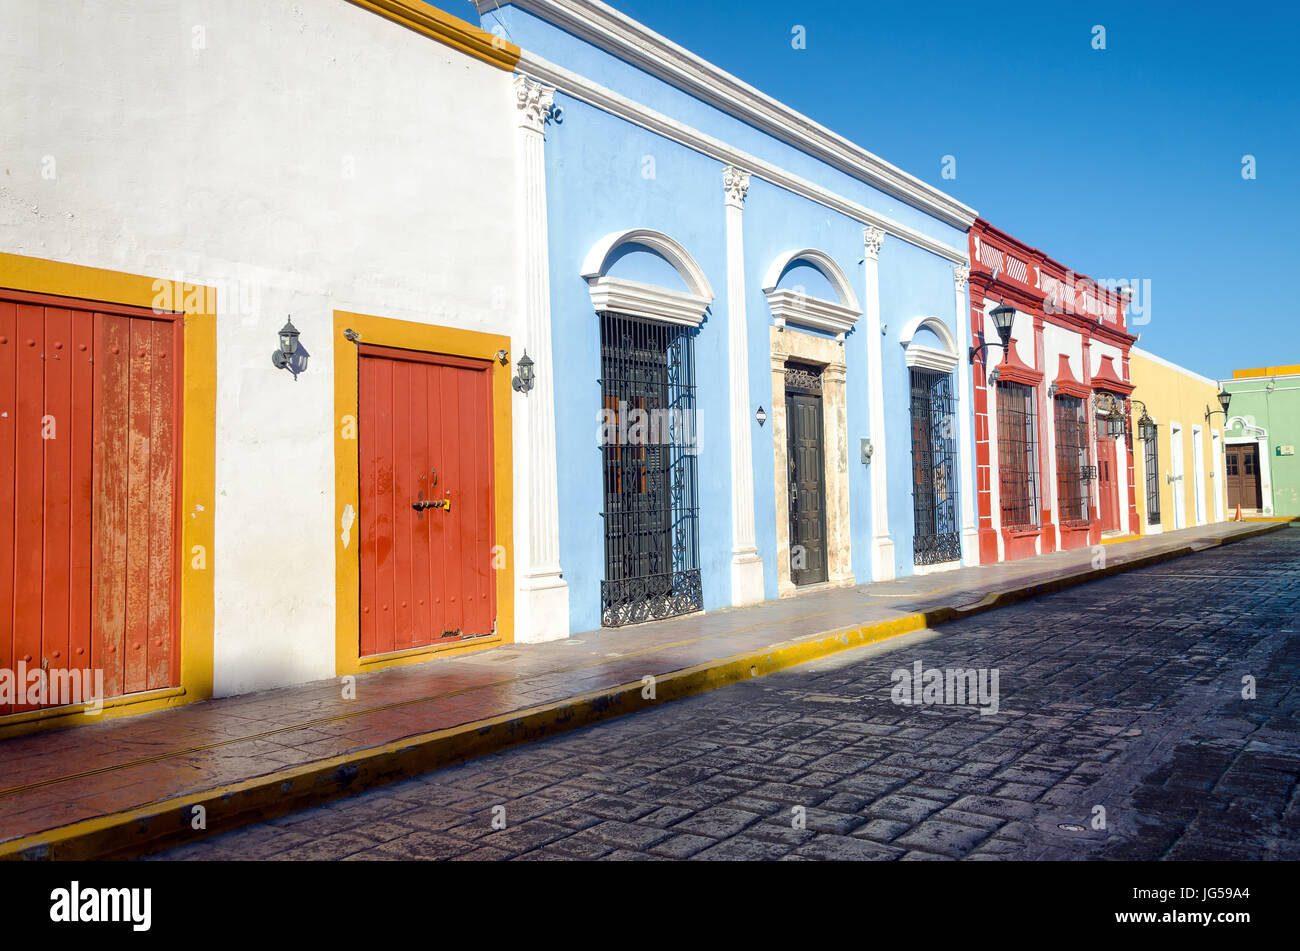 Rue coloniale typique dans la région de Campeche, Mexique Banque D'Images